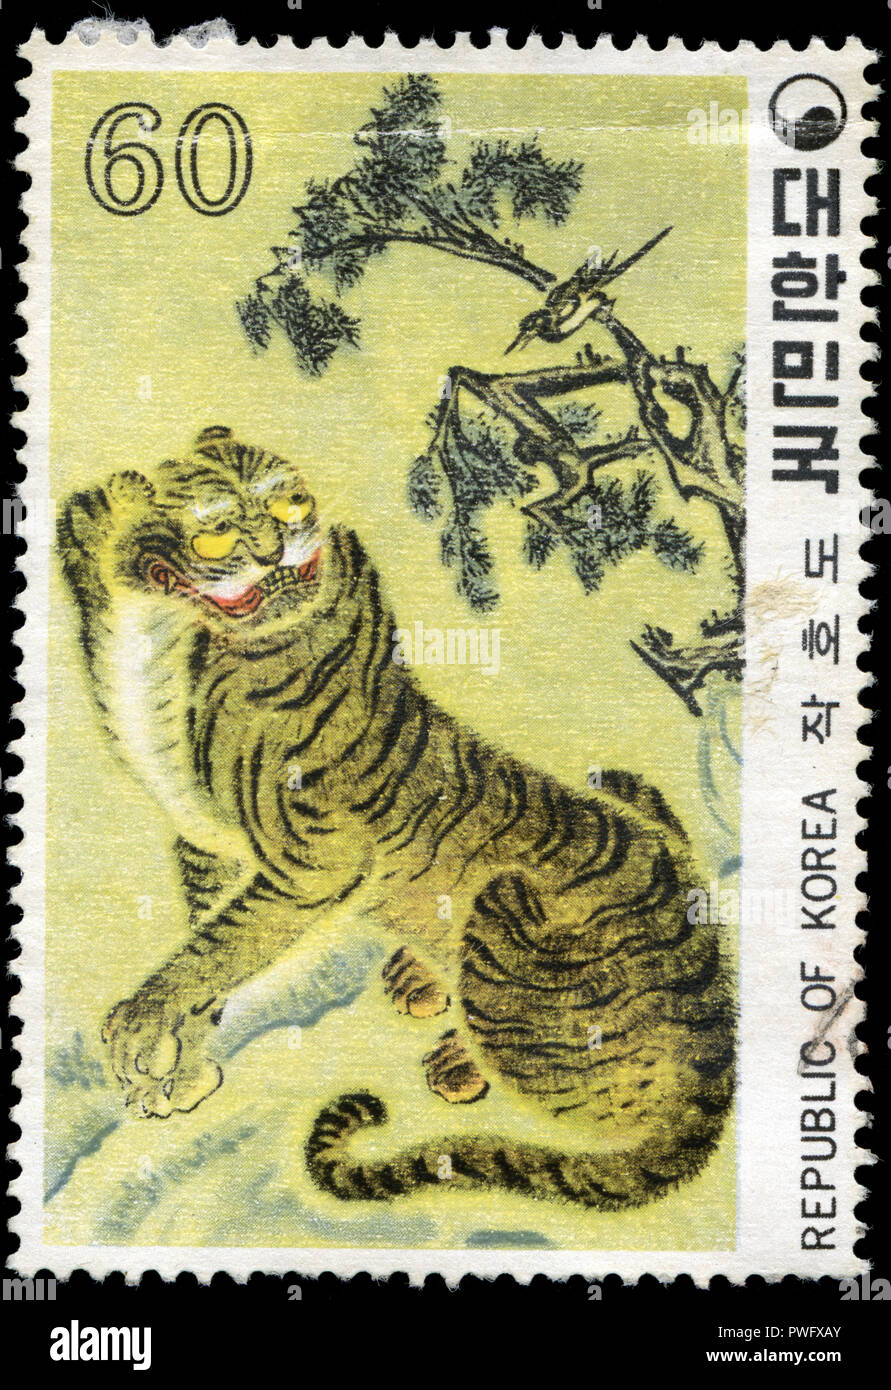 Timbre cachet de la Corée du Sud dans la peinture folklorique (I) série émise en 1980 Banque D'Images